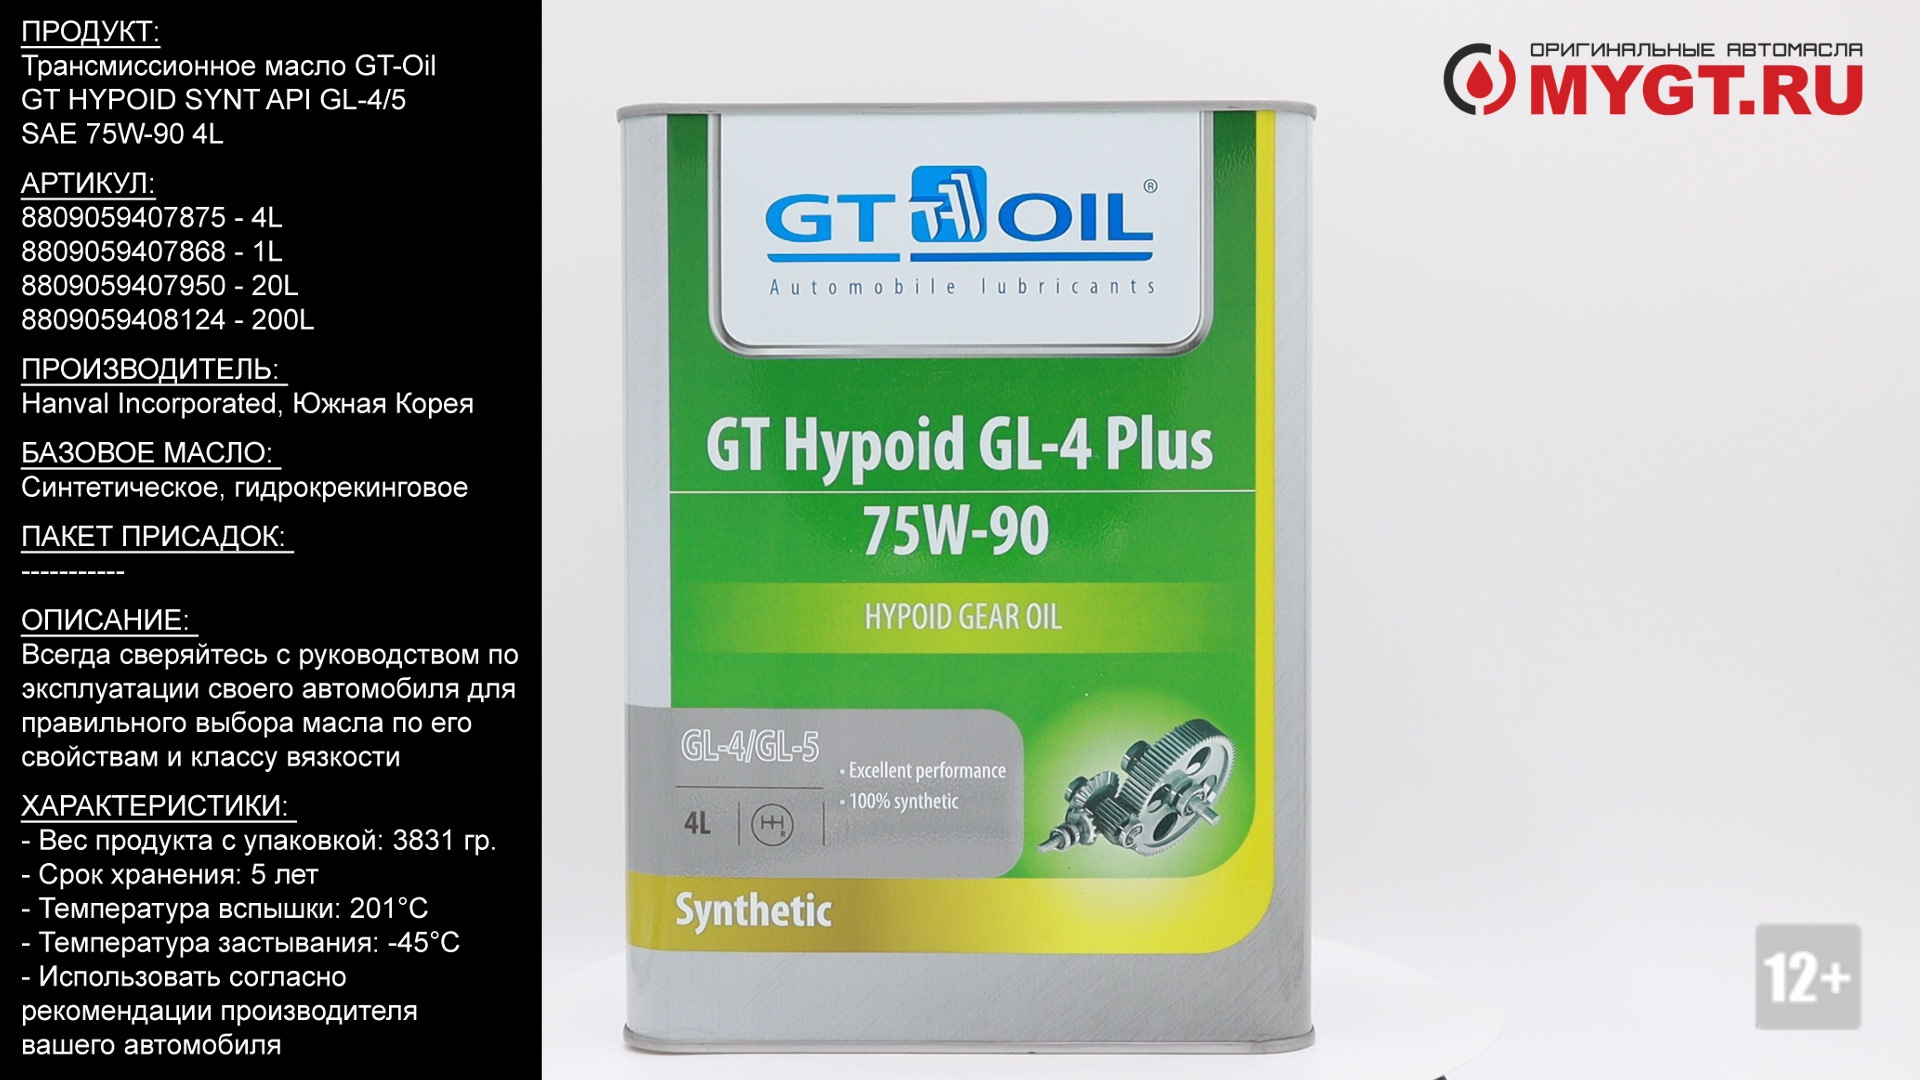 Gt Oil 75w90 gl-5. 8809059407868 Gt Oil. 8809059407950 Gt Oil. Gt Hypoid Synt 75w-90 gl-5. Трансмиссионное масло gt